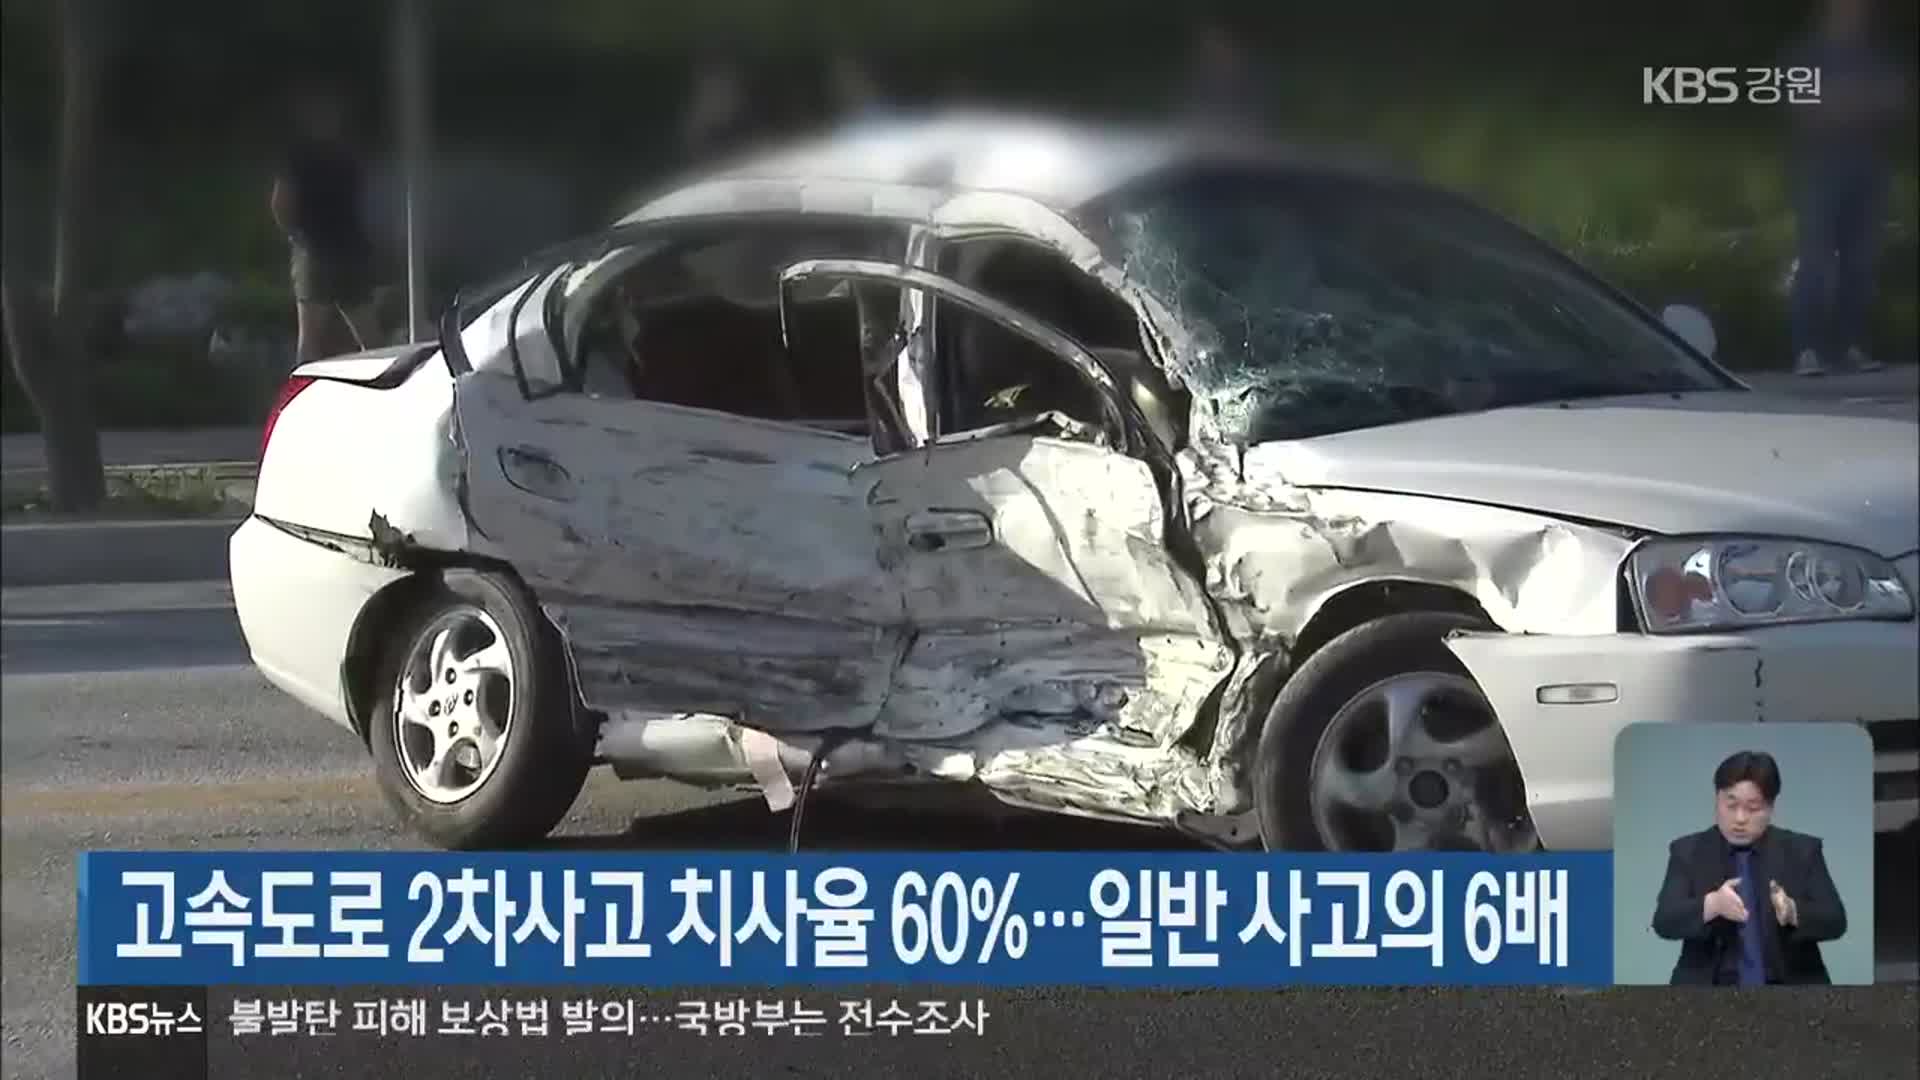 고속도로 2차 사고 치사율 60%…일반 사고의 6배